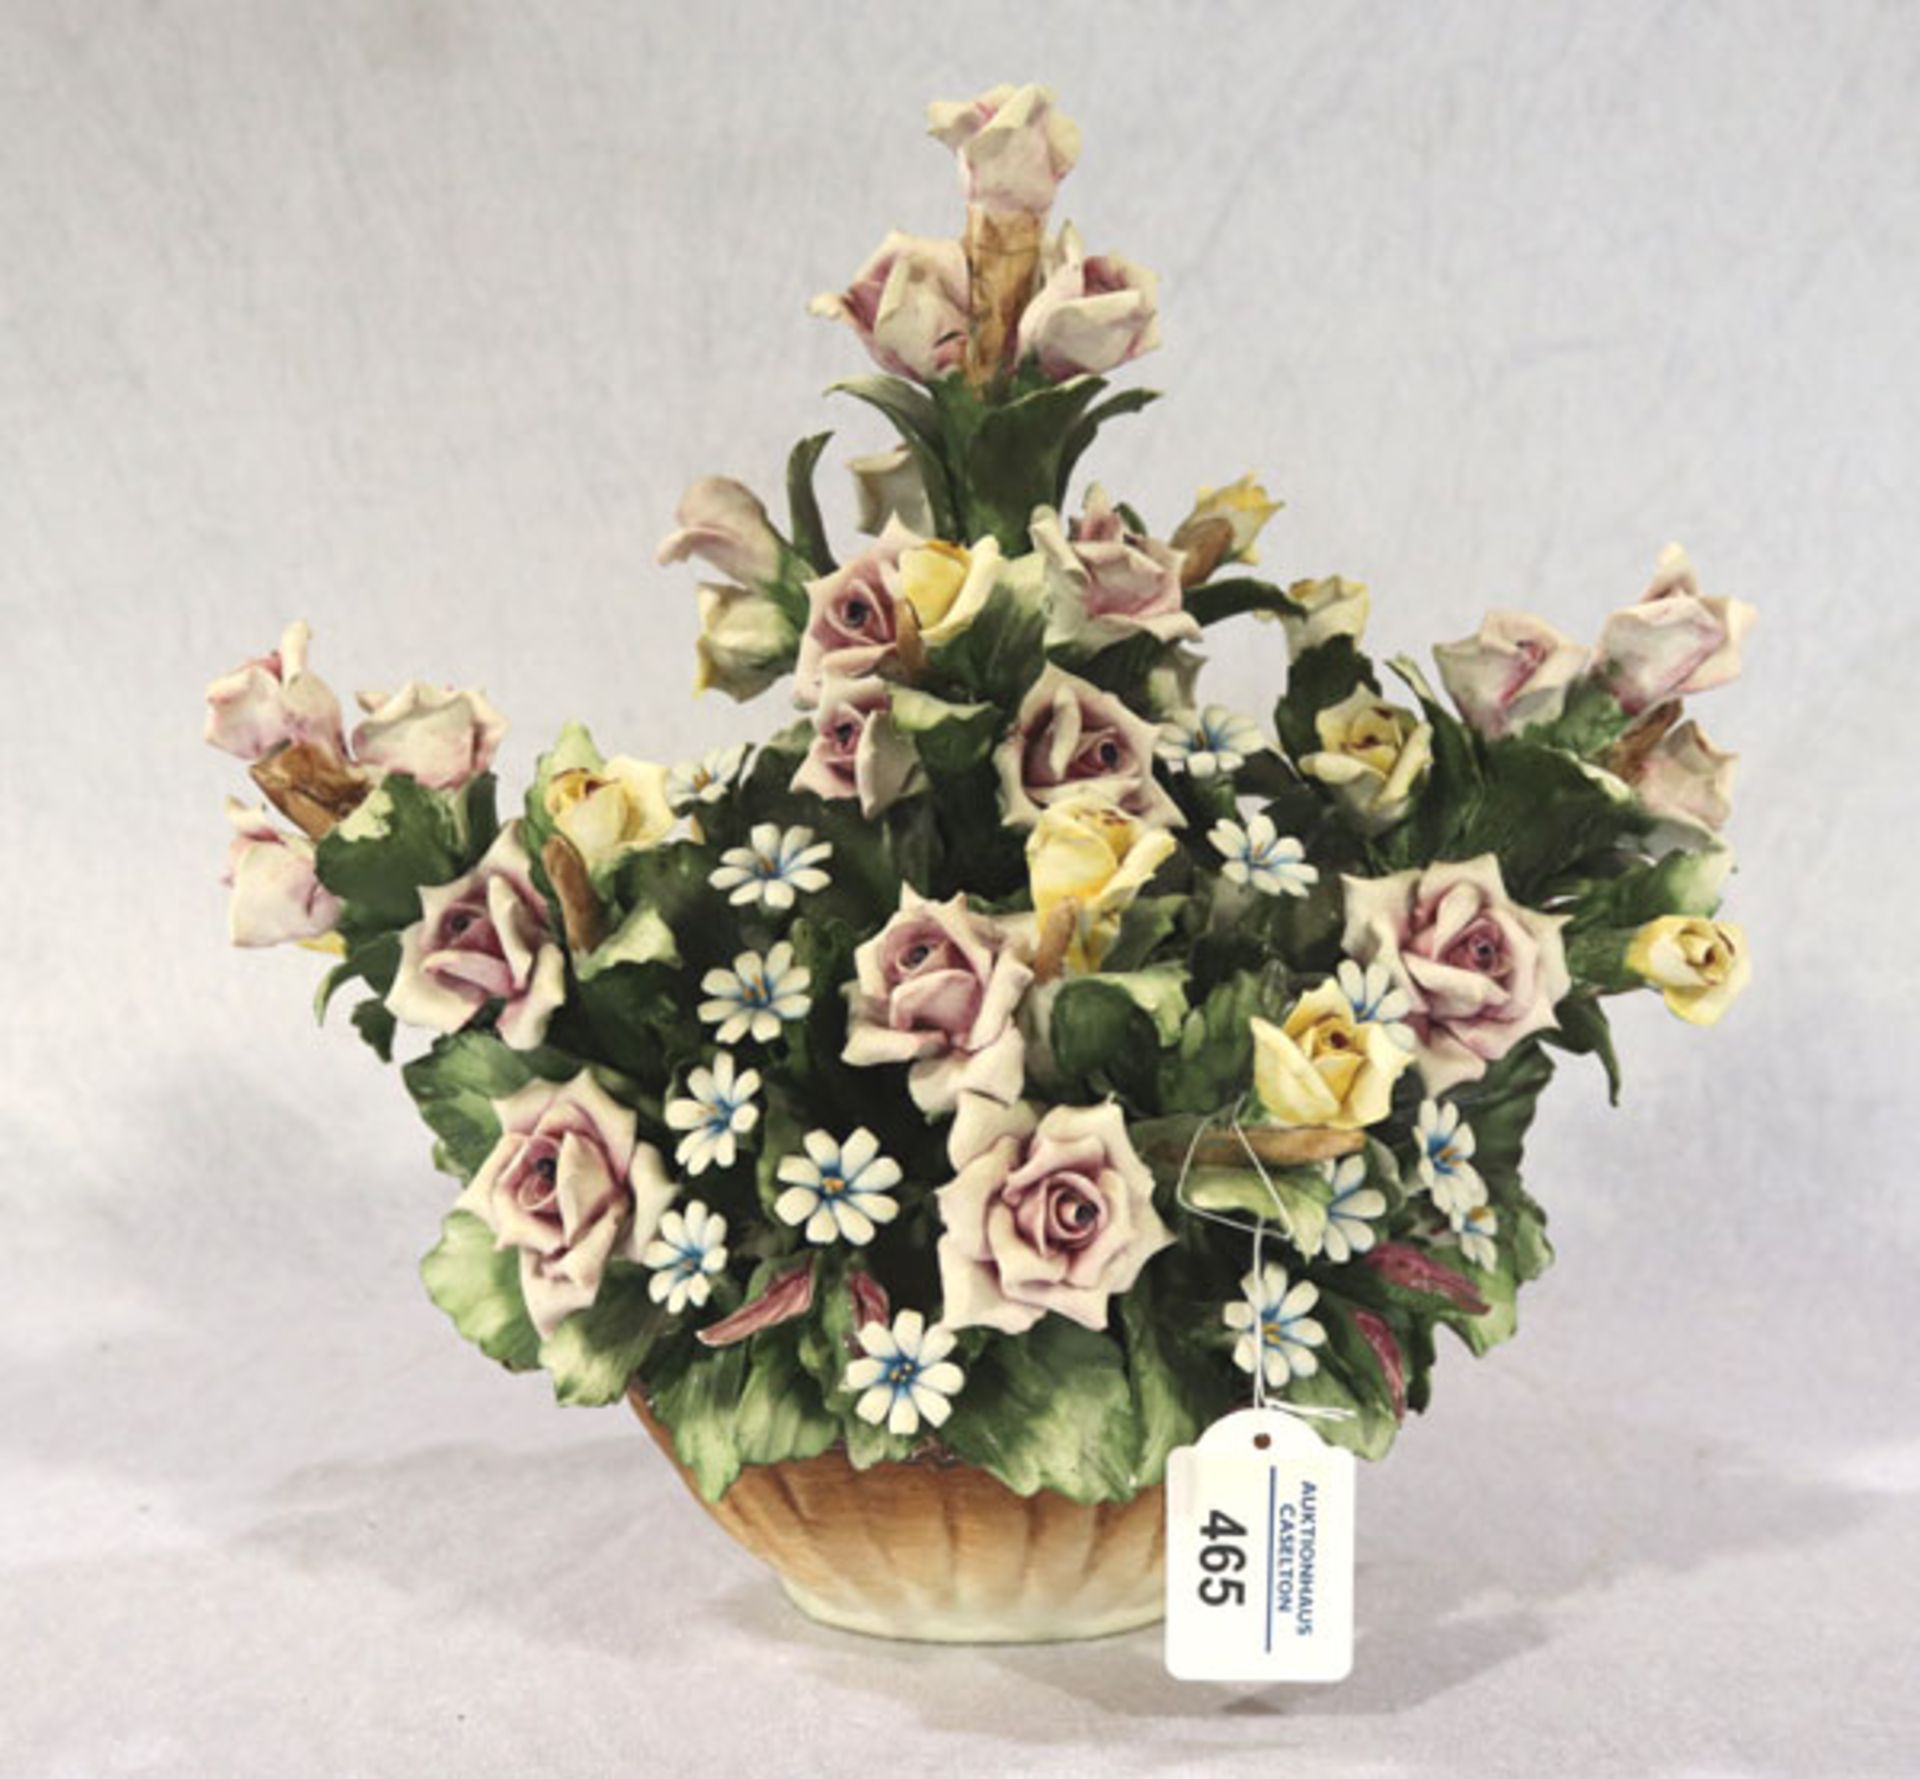 Keramik Tischdekoration 'Blumen in Korb', Capodimonte, beschädigt und geklebt, H 28 cm, B 28 cm, T